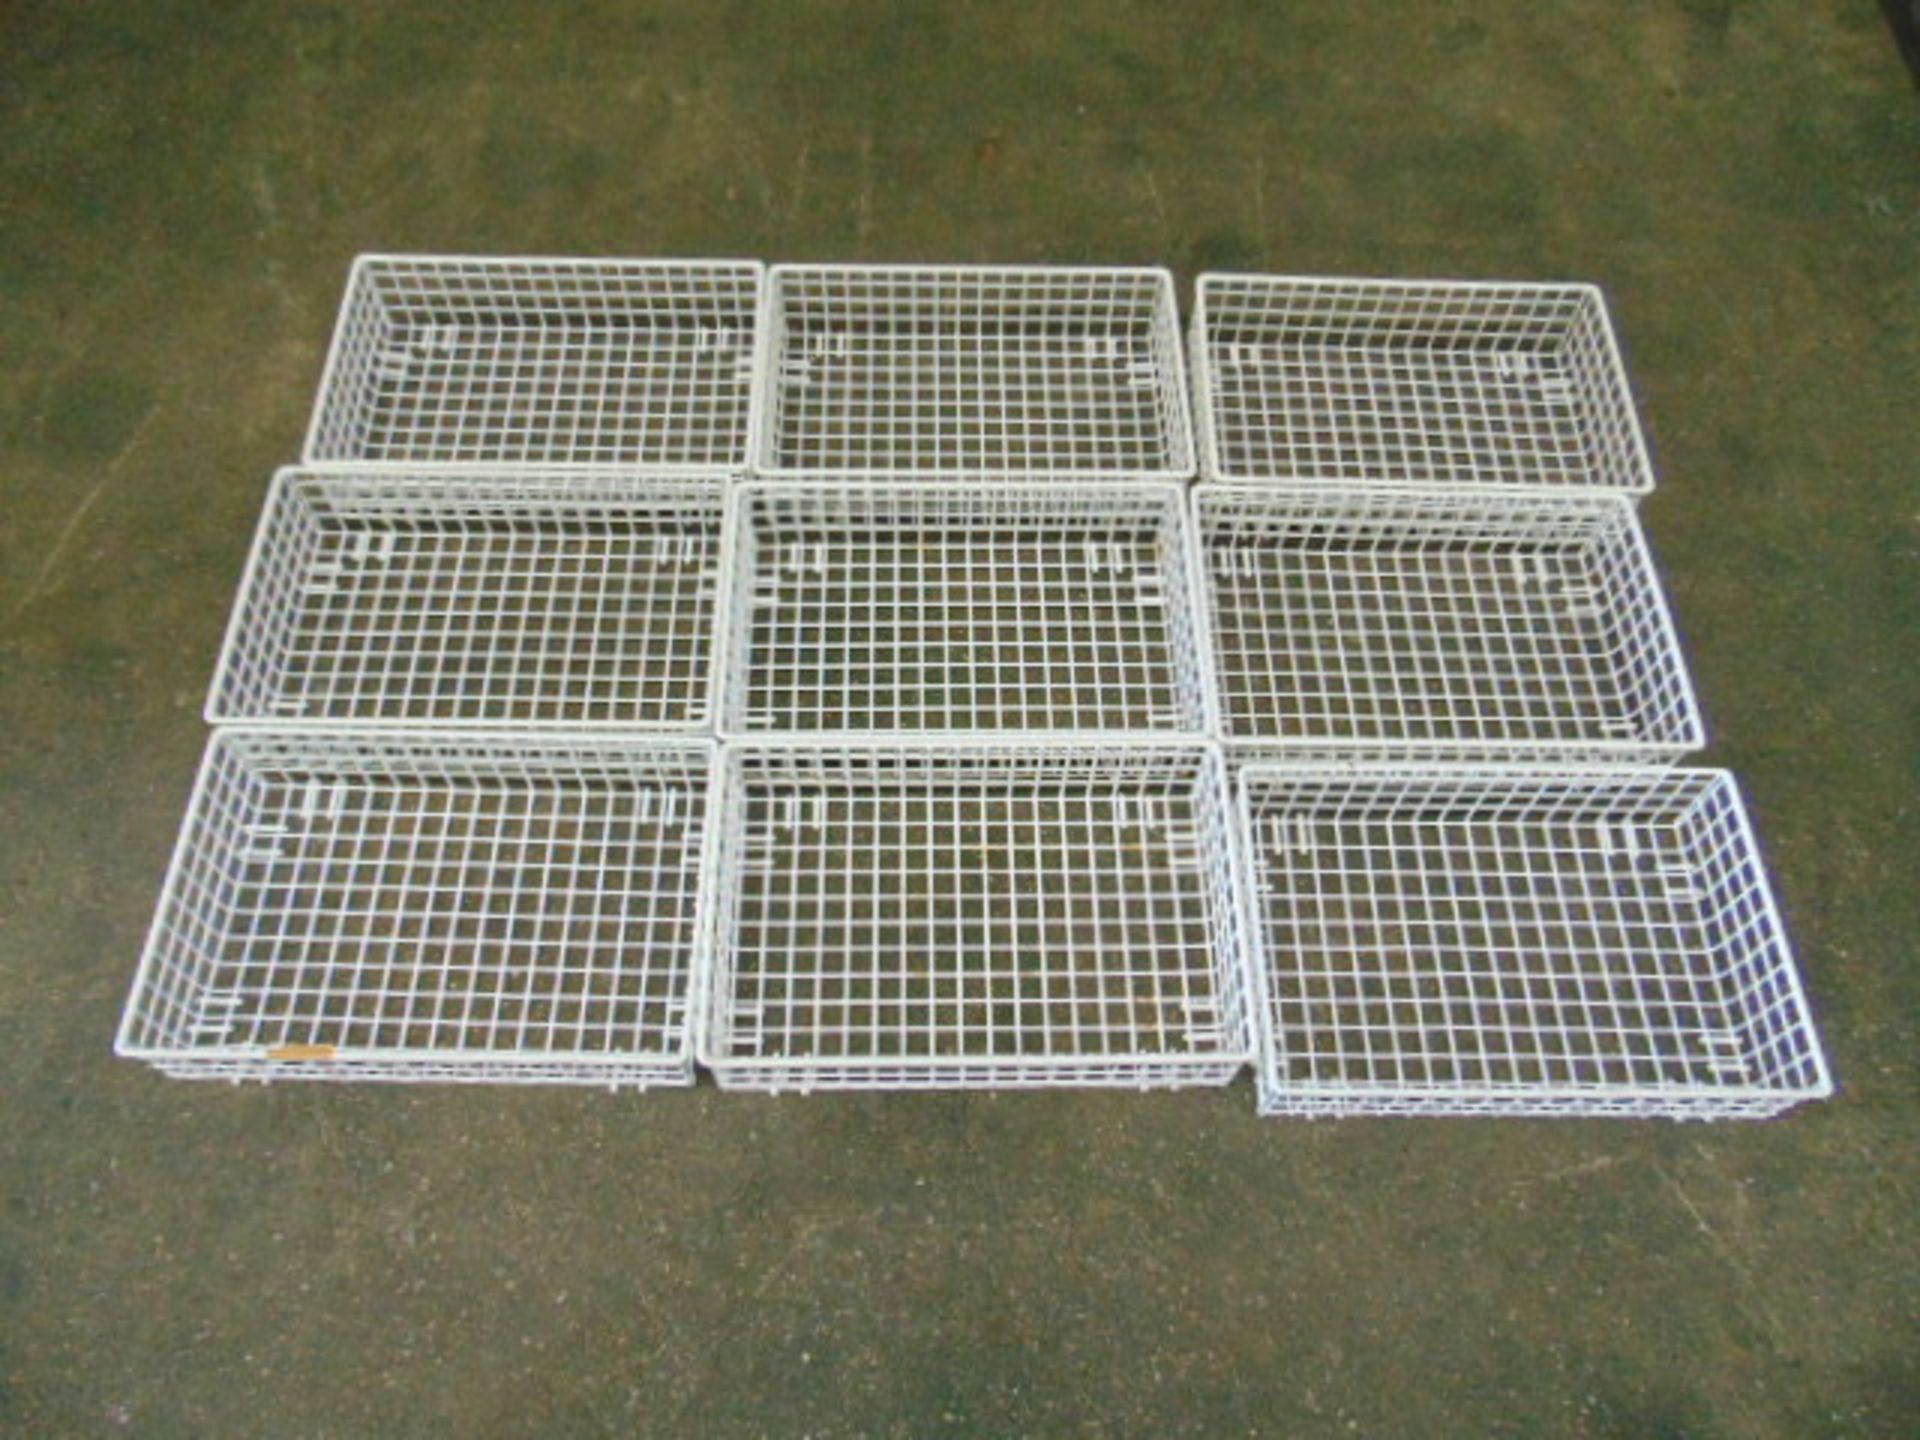 9 x Metal Storage Cage Trays